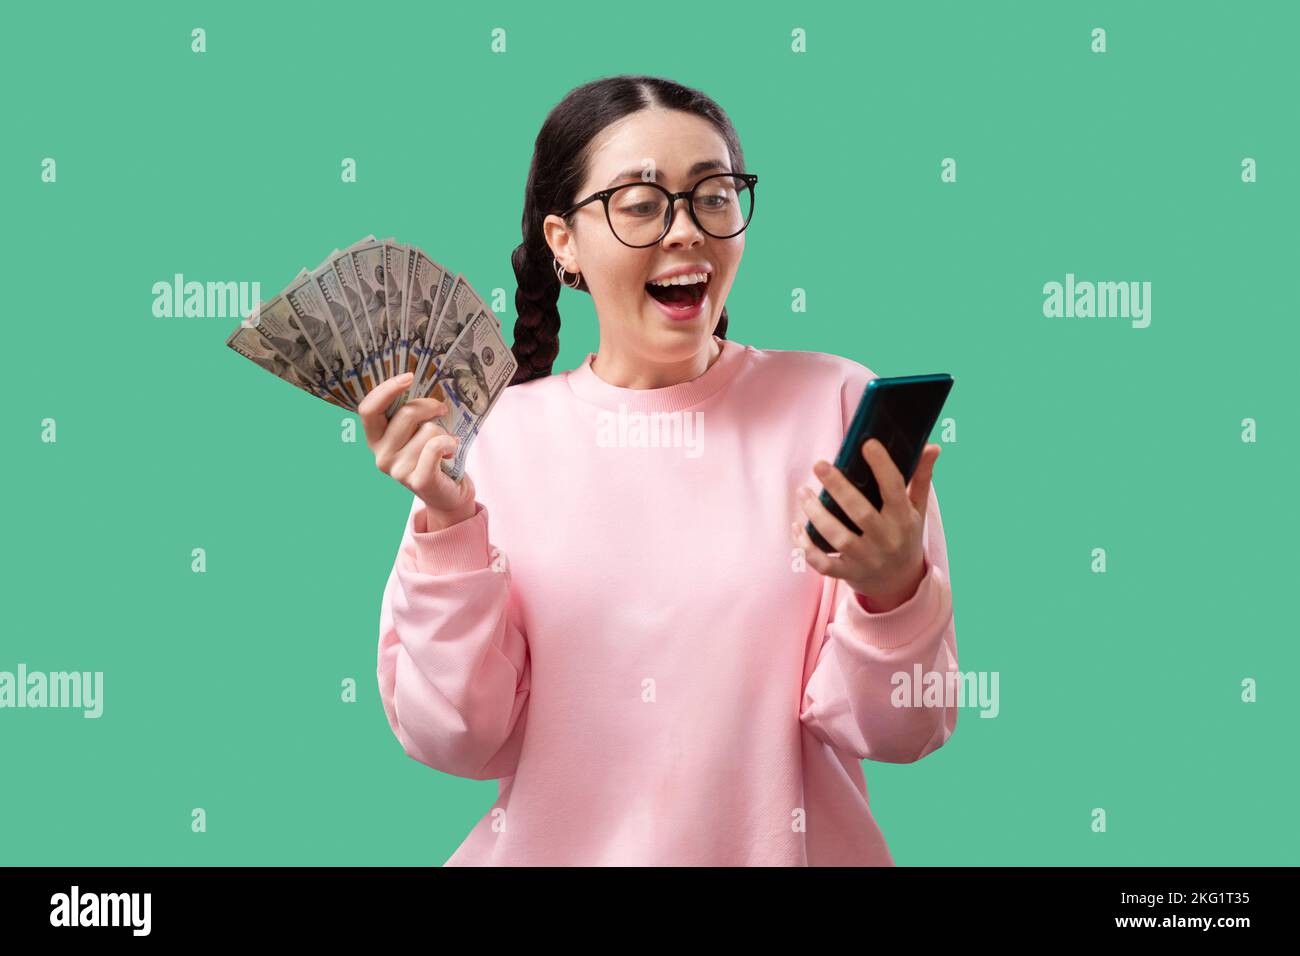 Porträt einer fröhlichen jungen Frau, die Geldscheine hält und isoliert auf gelbem Hintergrund feiert Stockfoto